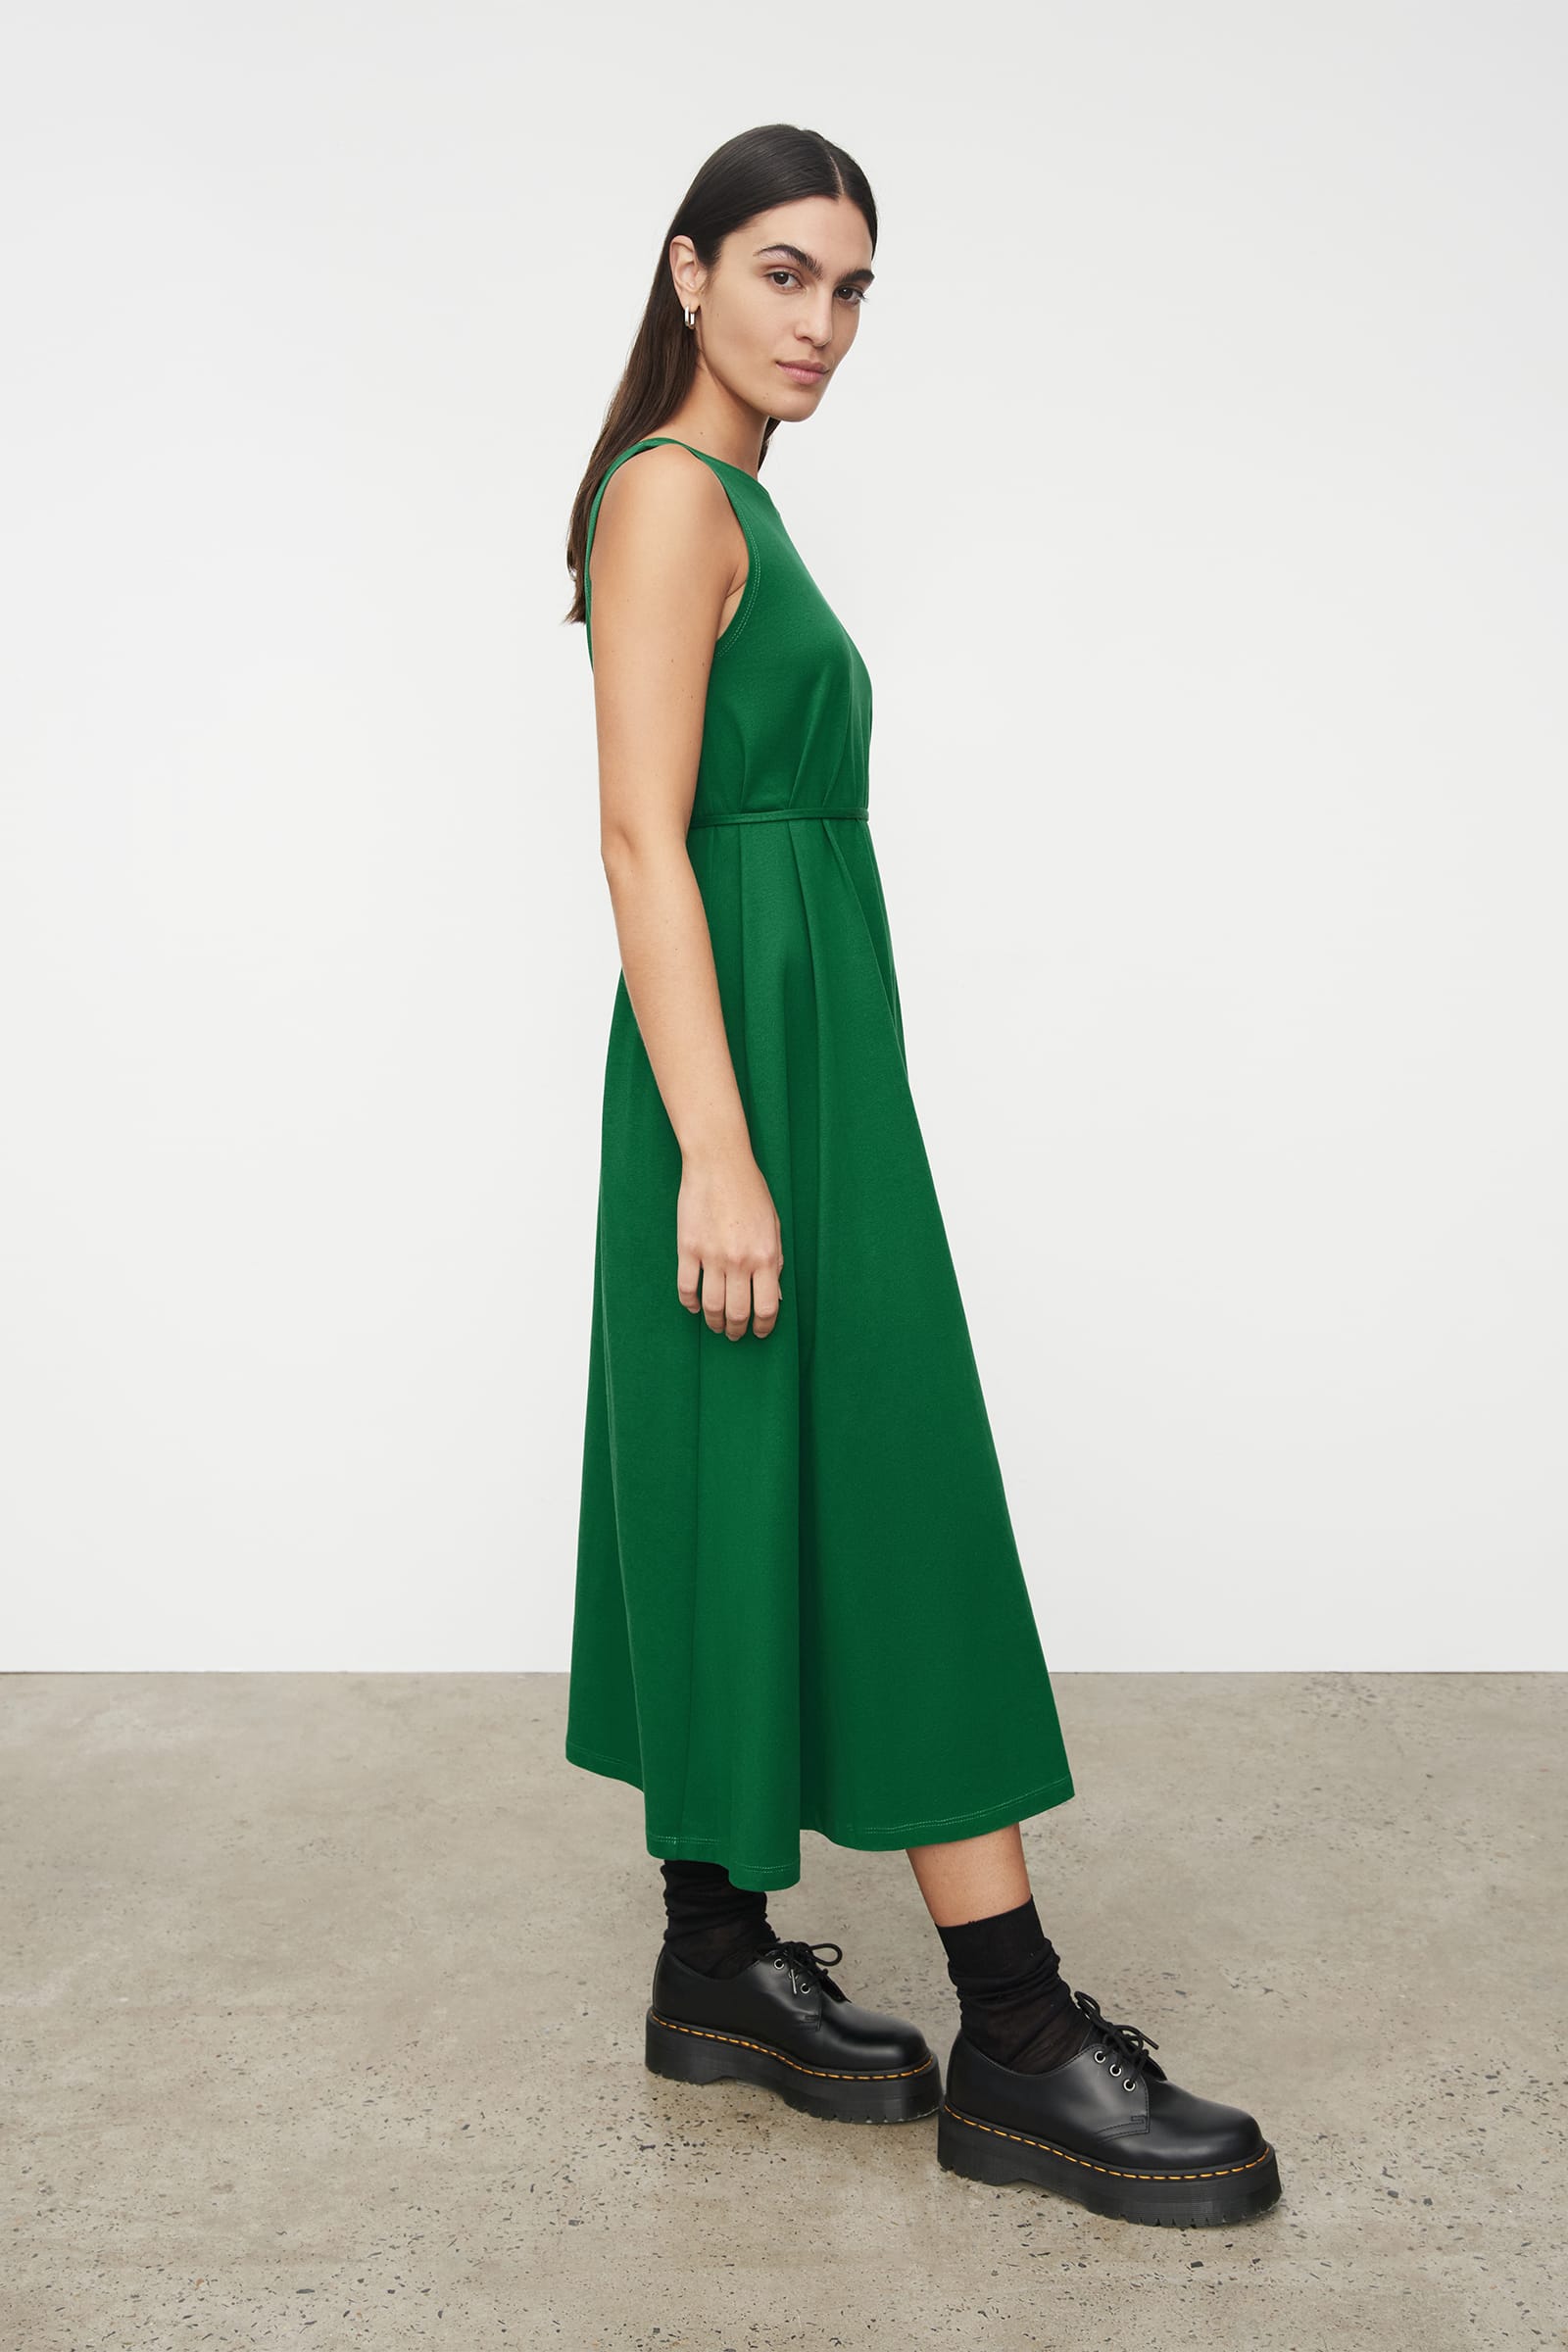 Evergreen Tank Dress, A-Line, Sleeveless